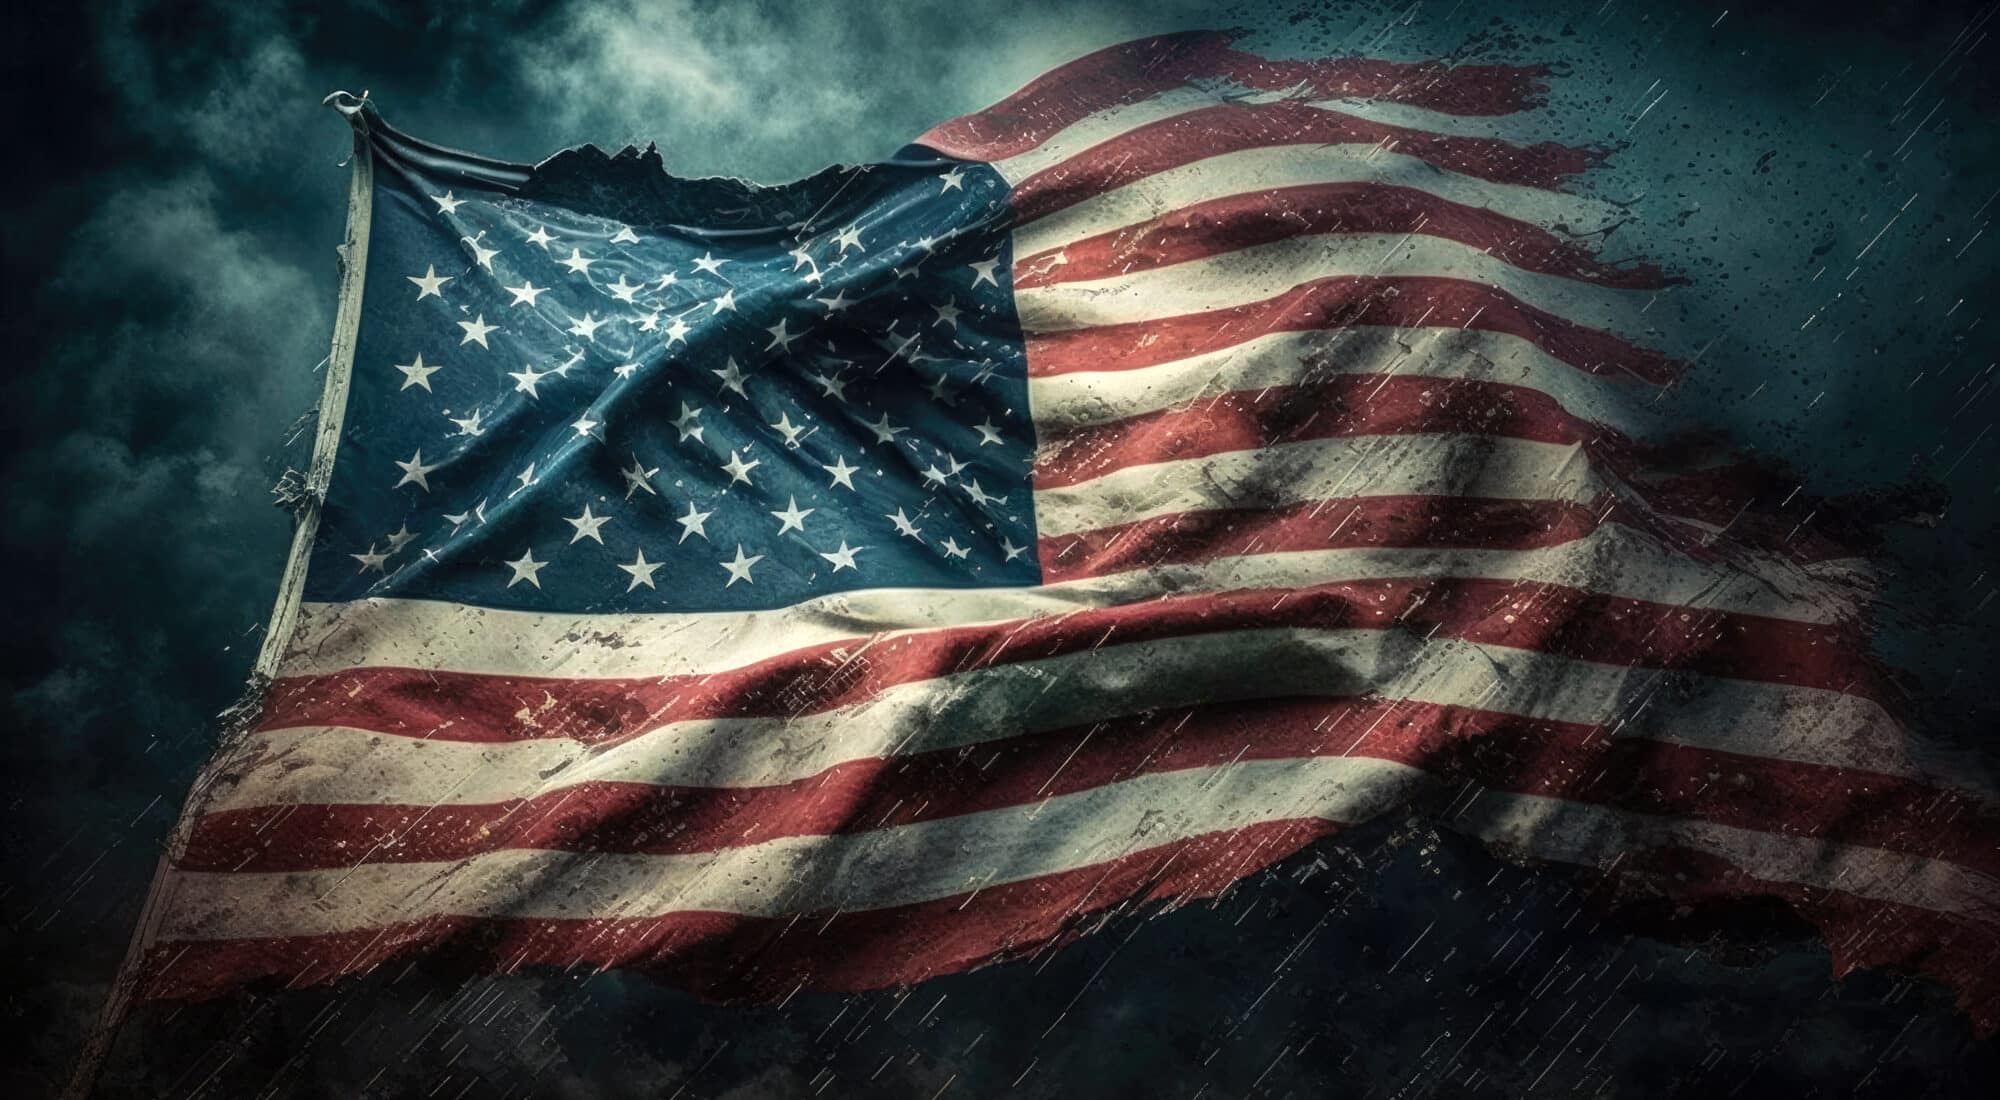 Die beschädigte Fahne der Vereinigten Staaten von Amerika vor dunklem Hintergrund.